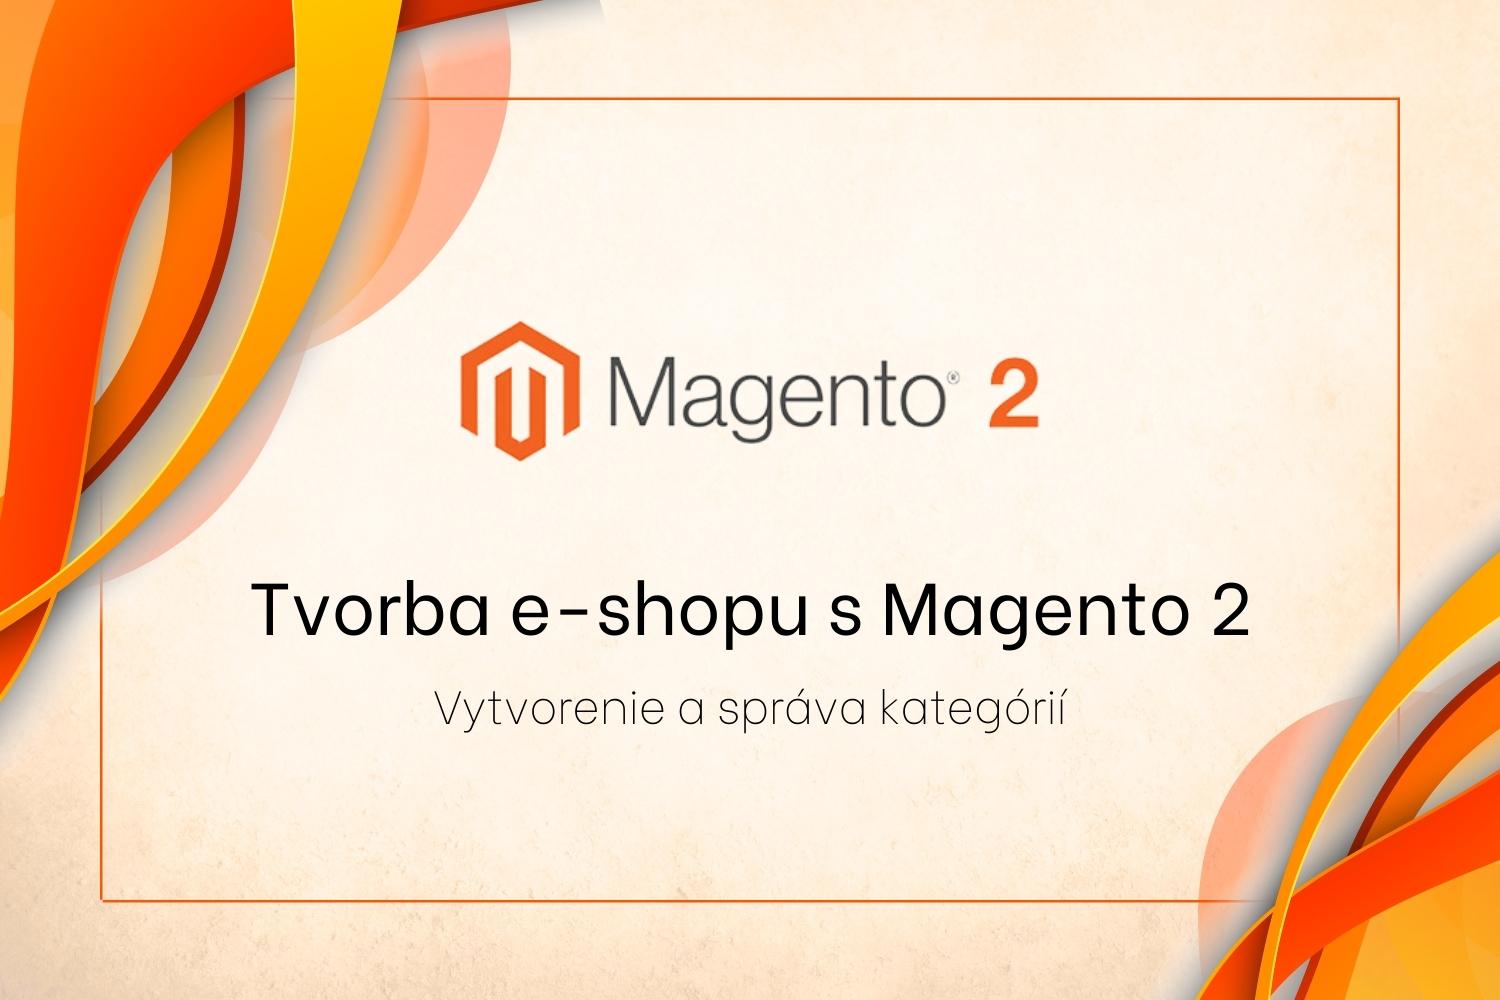 Tvorba e-shopu s Magento 2